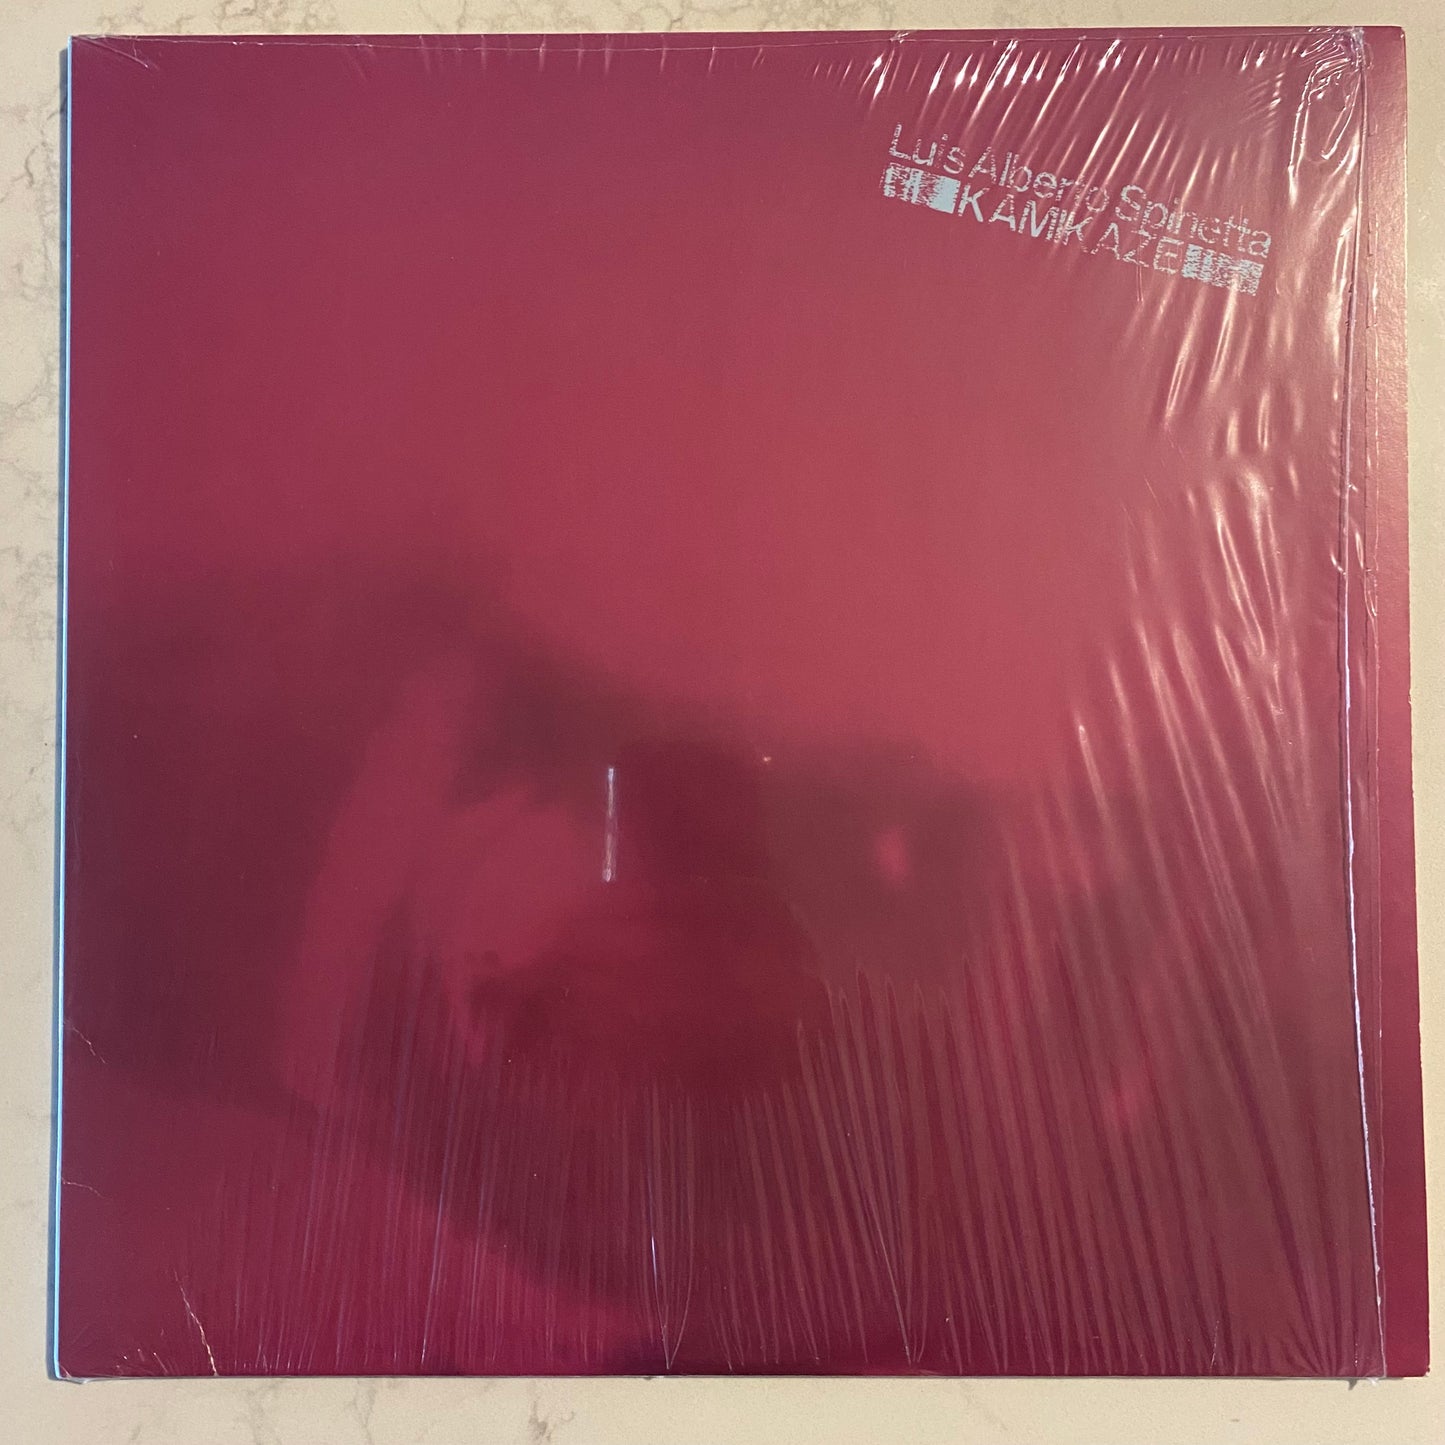 Luis Alberto Spinetta - Kamikaze (LP, Album, RE, 180)